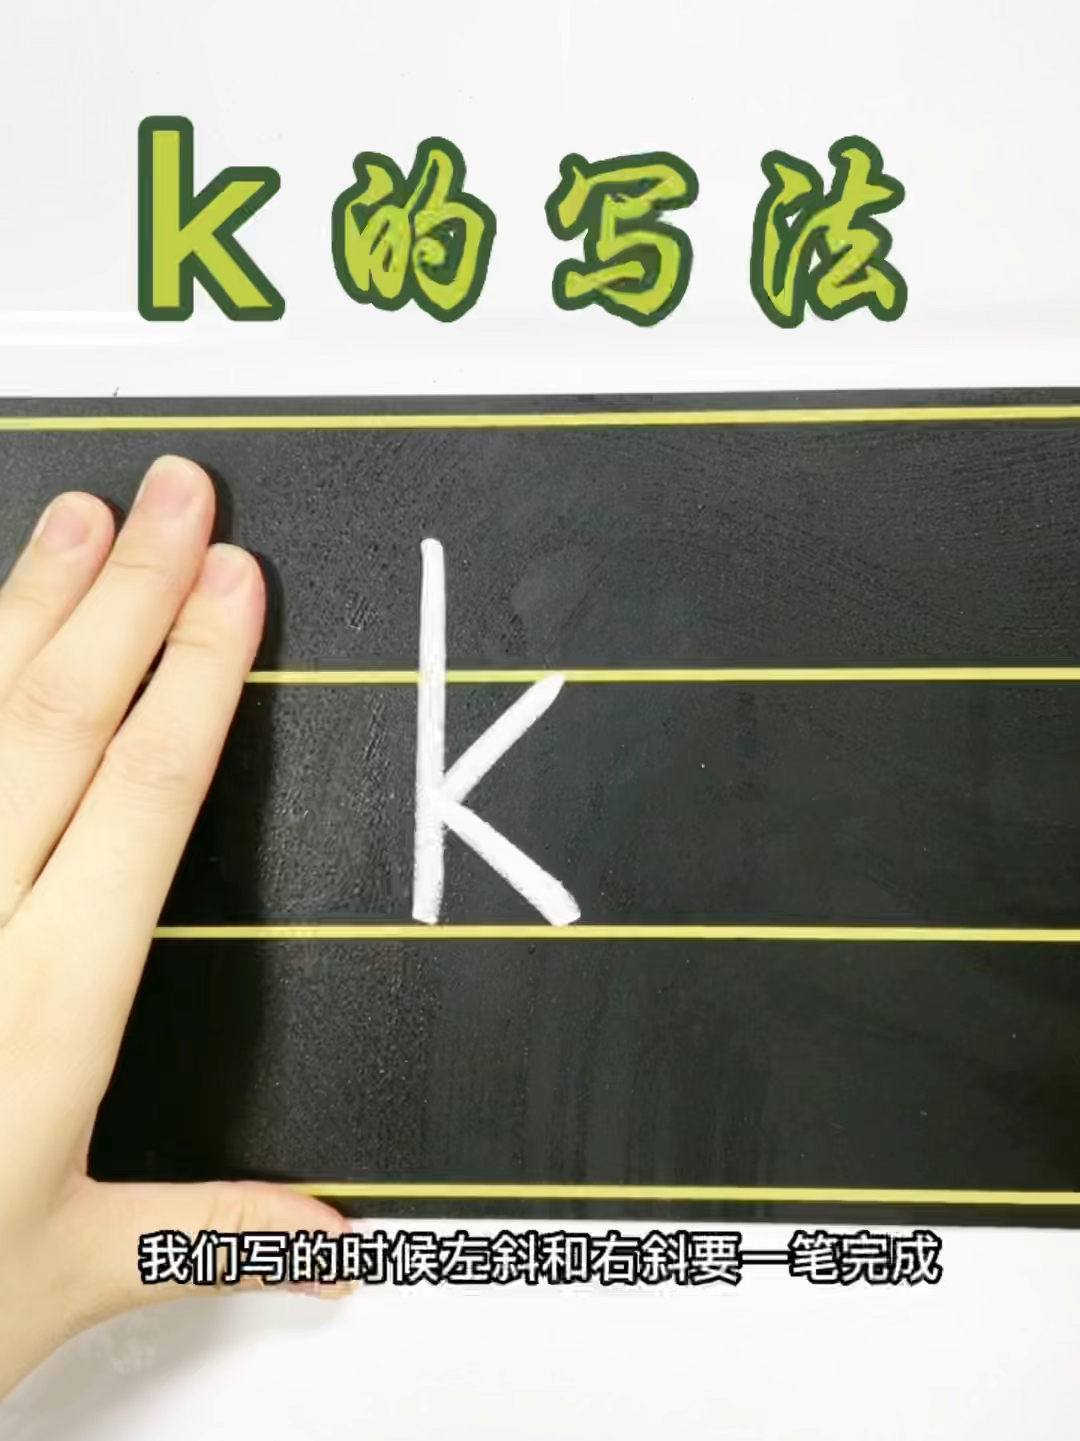 字母k的书写格式图片